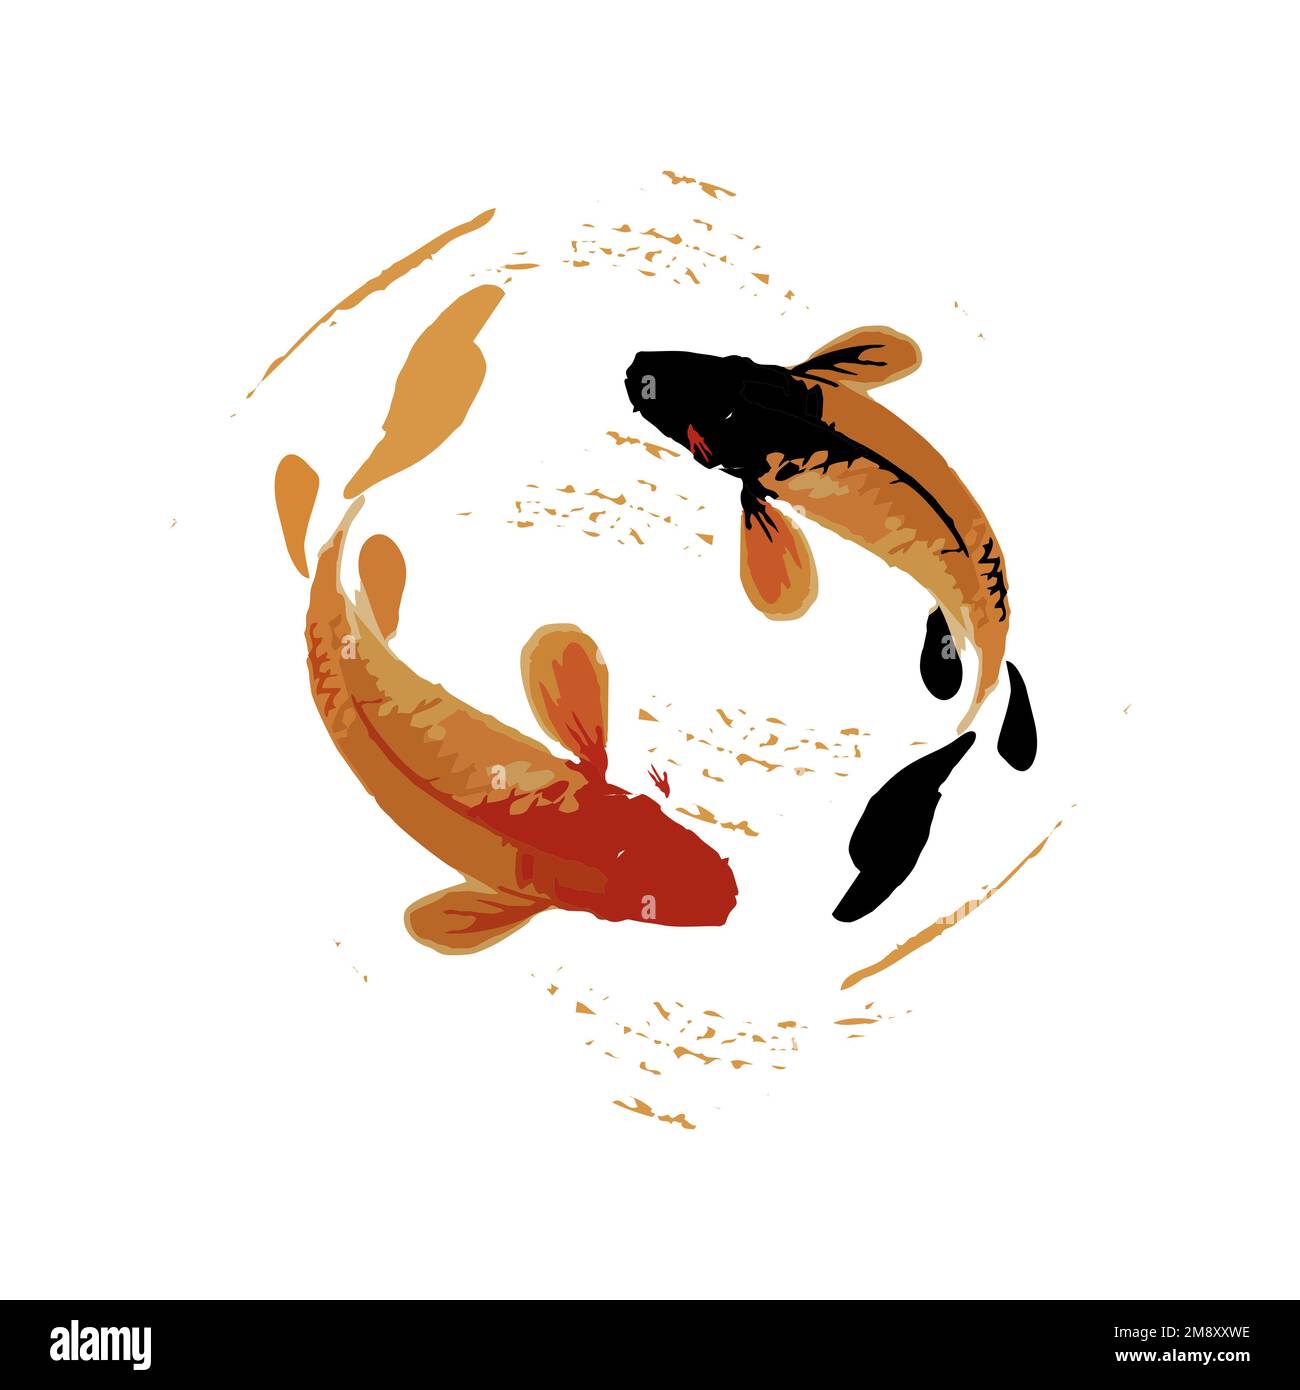 koi fish illustration in in art splash japan style art vector Stock Photo